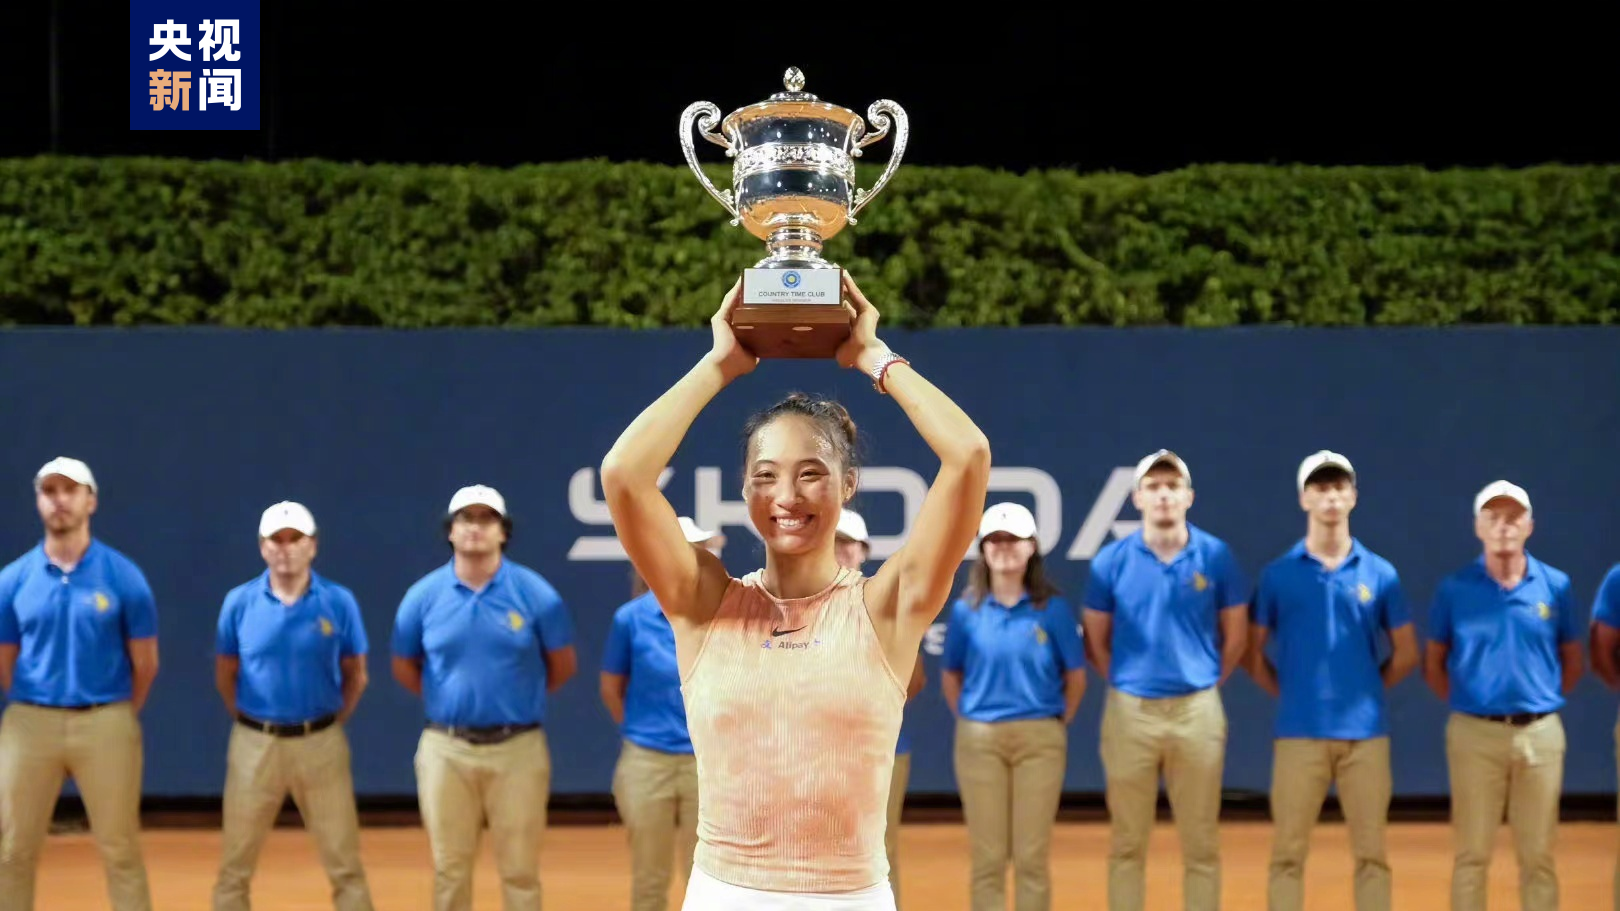 Zheng Qinwen beats Karolina Muchova to defend Palermo Open title